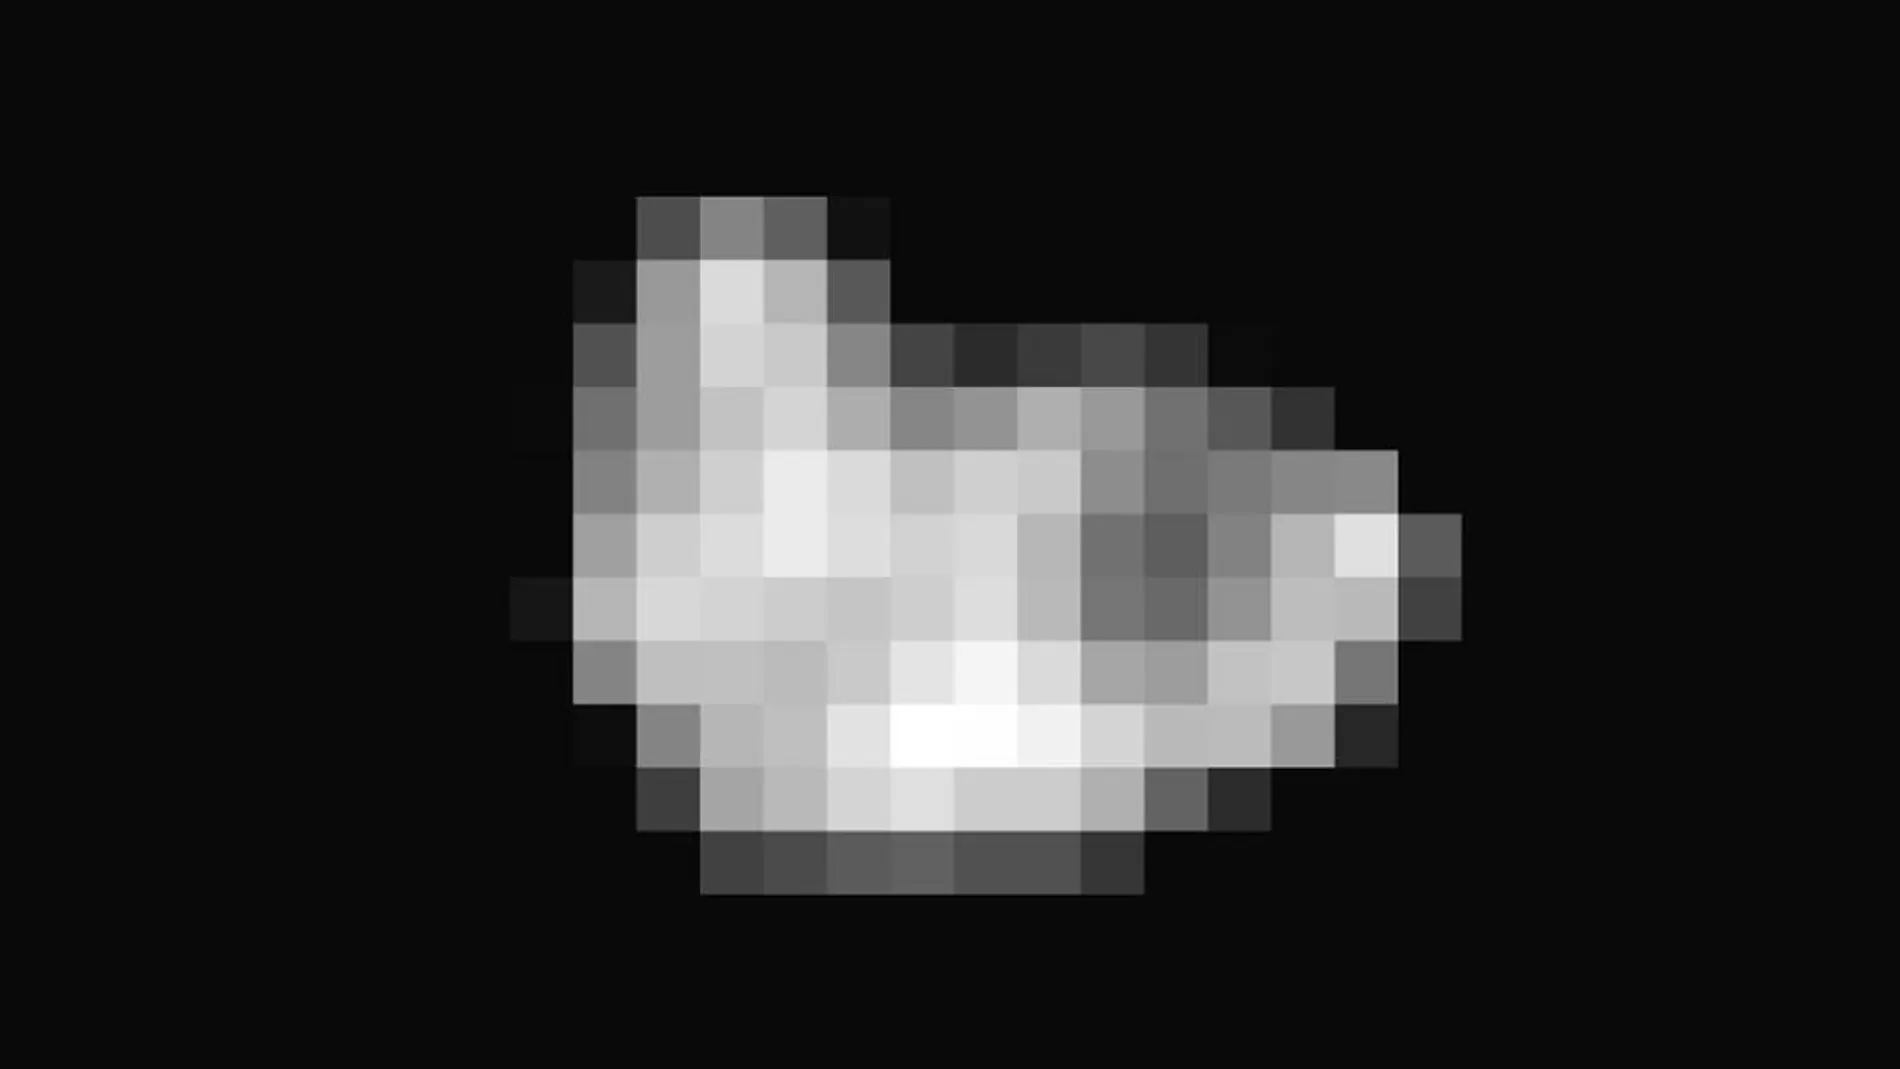 Hydra, la luna más remota de Plutón, tiene forma de patata